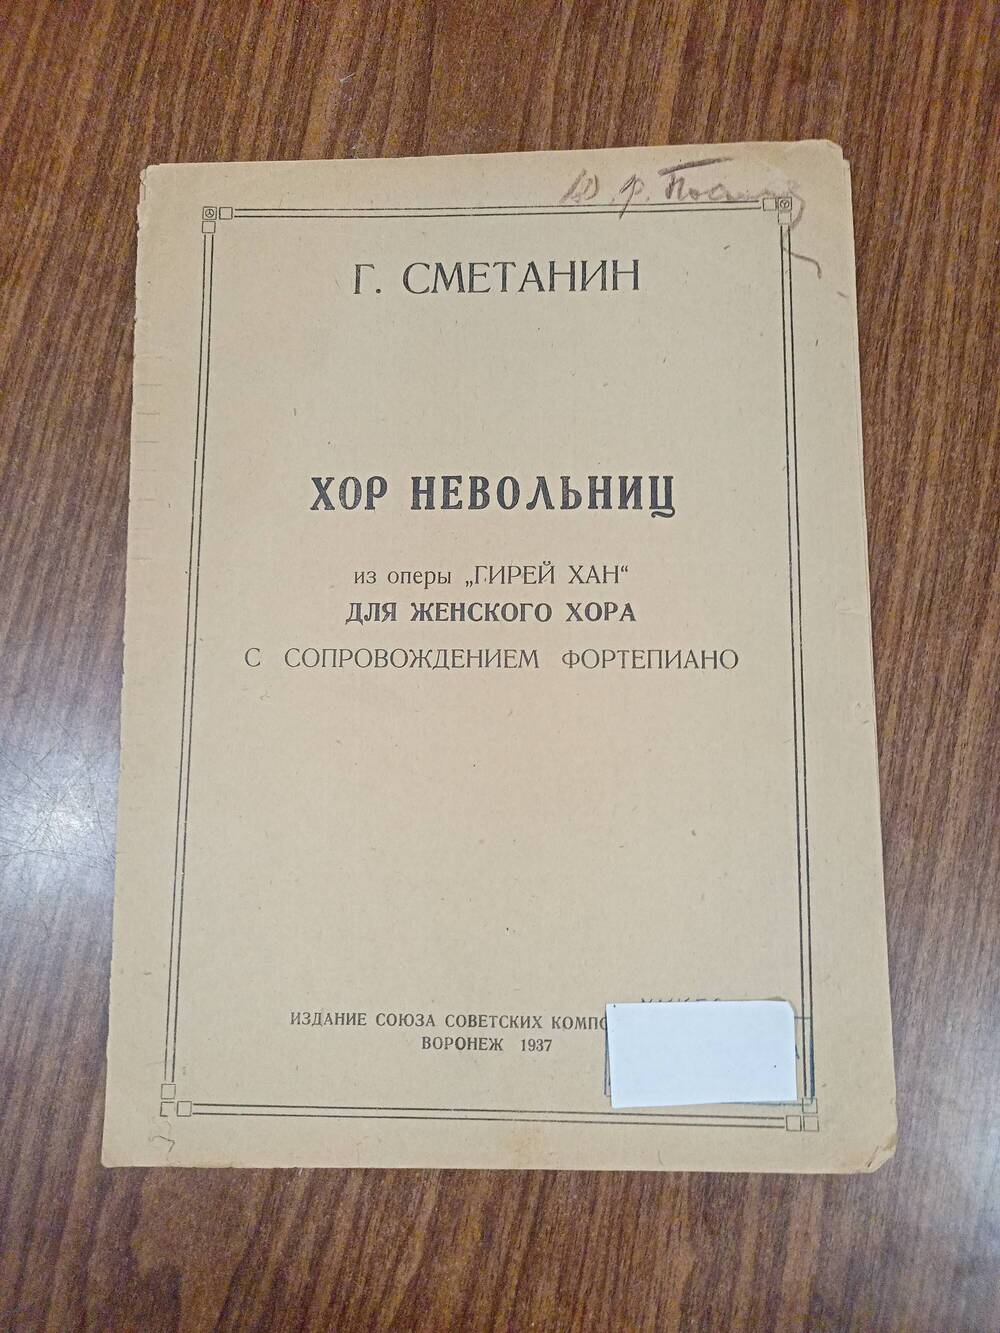 Ноты. Г. Сметанин «Хор невольниц» из оперы «Гирей хан».1937г.